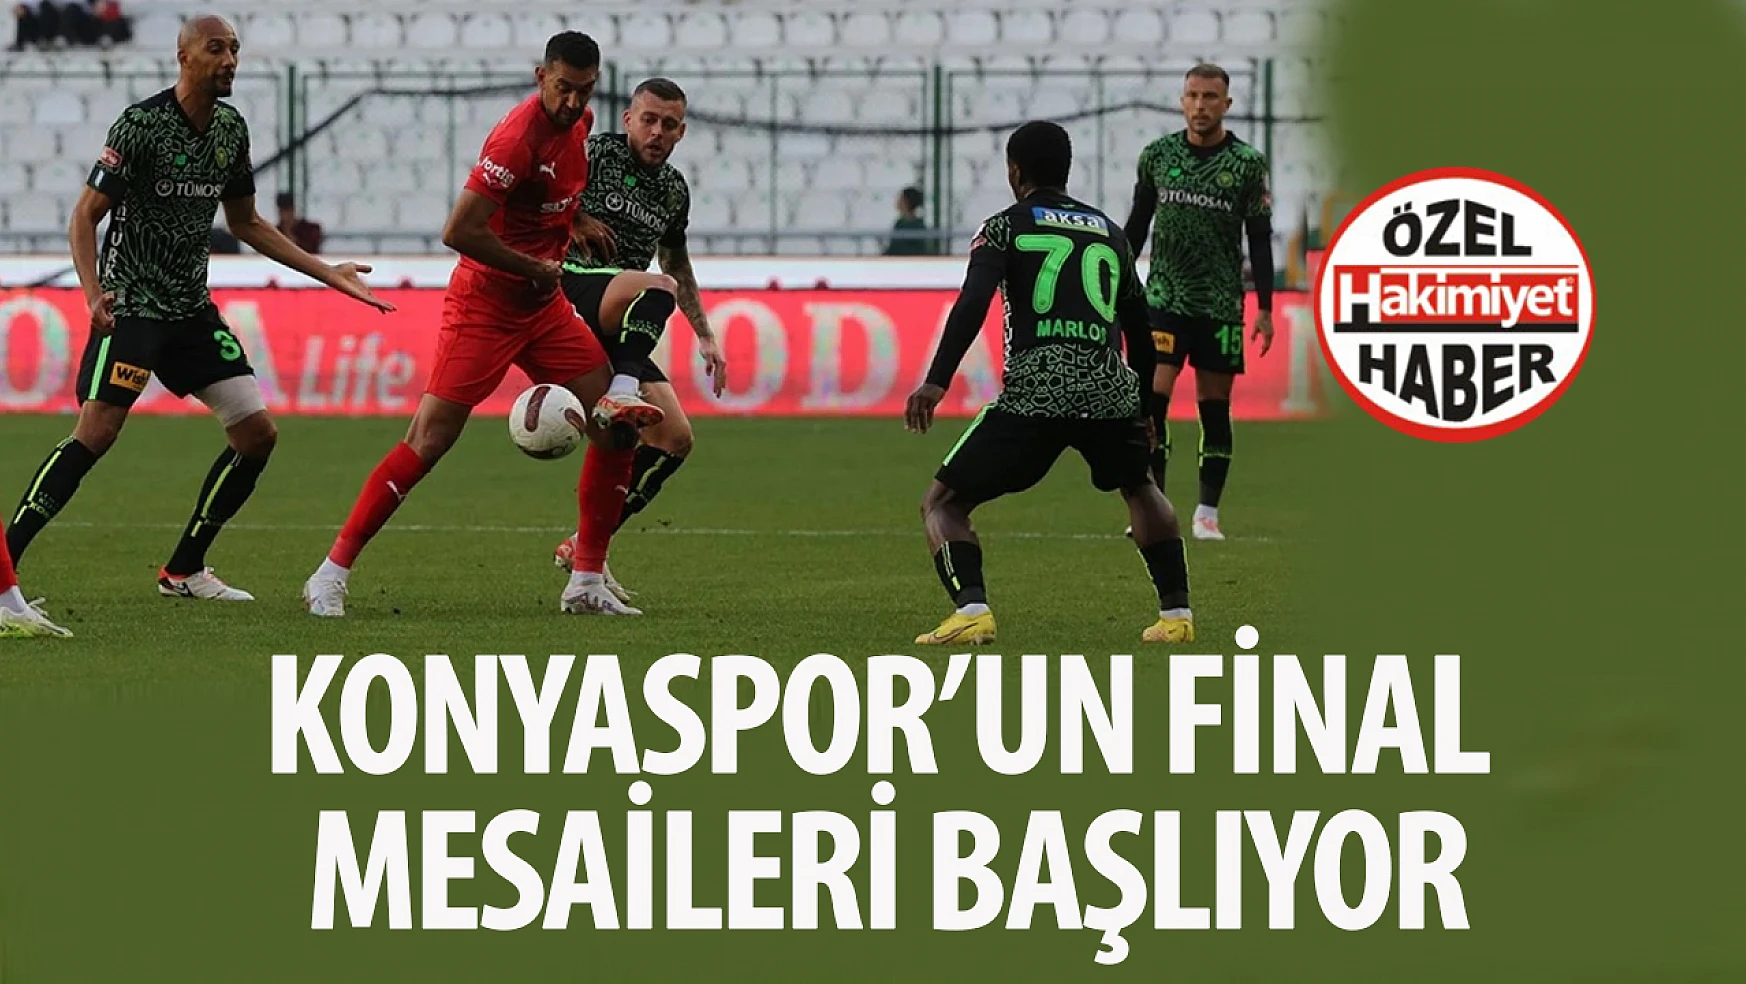 Konyaspor'un final mesaileri başlıyor: Bu maç düşme hattını yakından ilgilendiriyor!